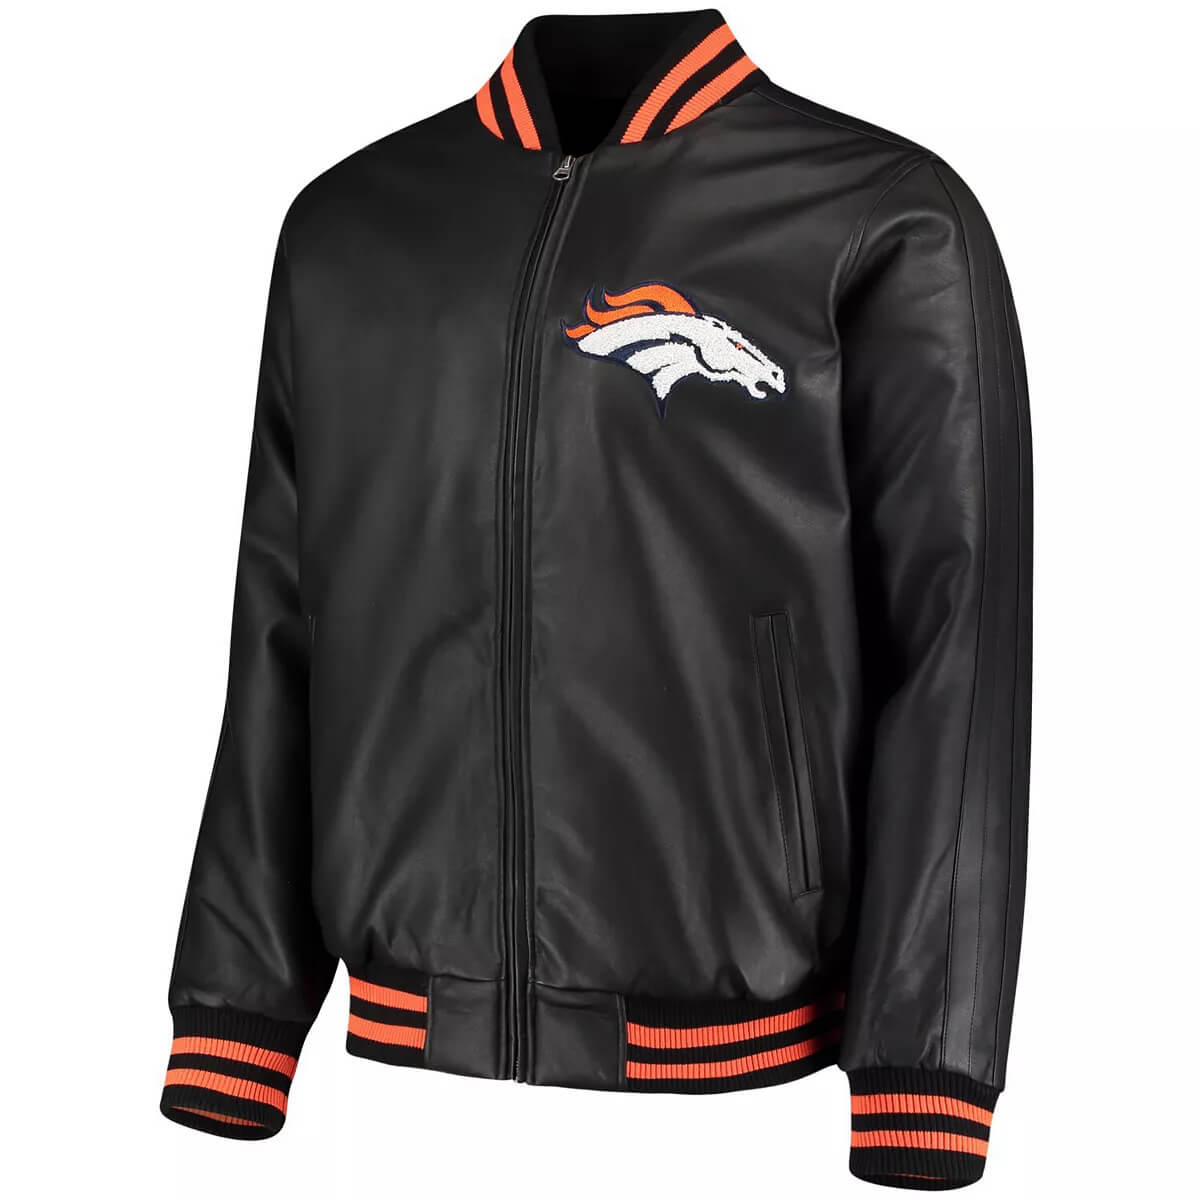 Maker of Jacket NFL Denver Broncos Black Team Leather